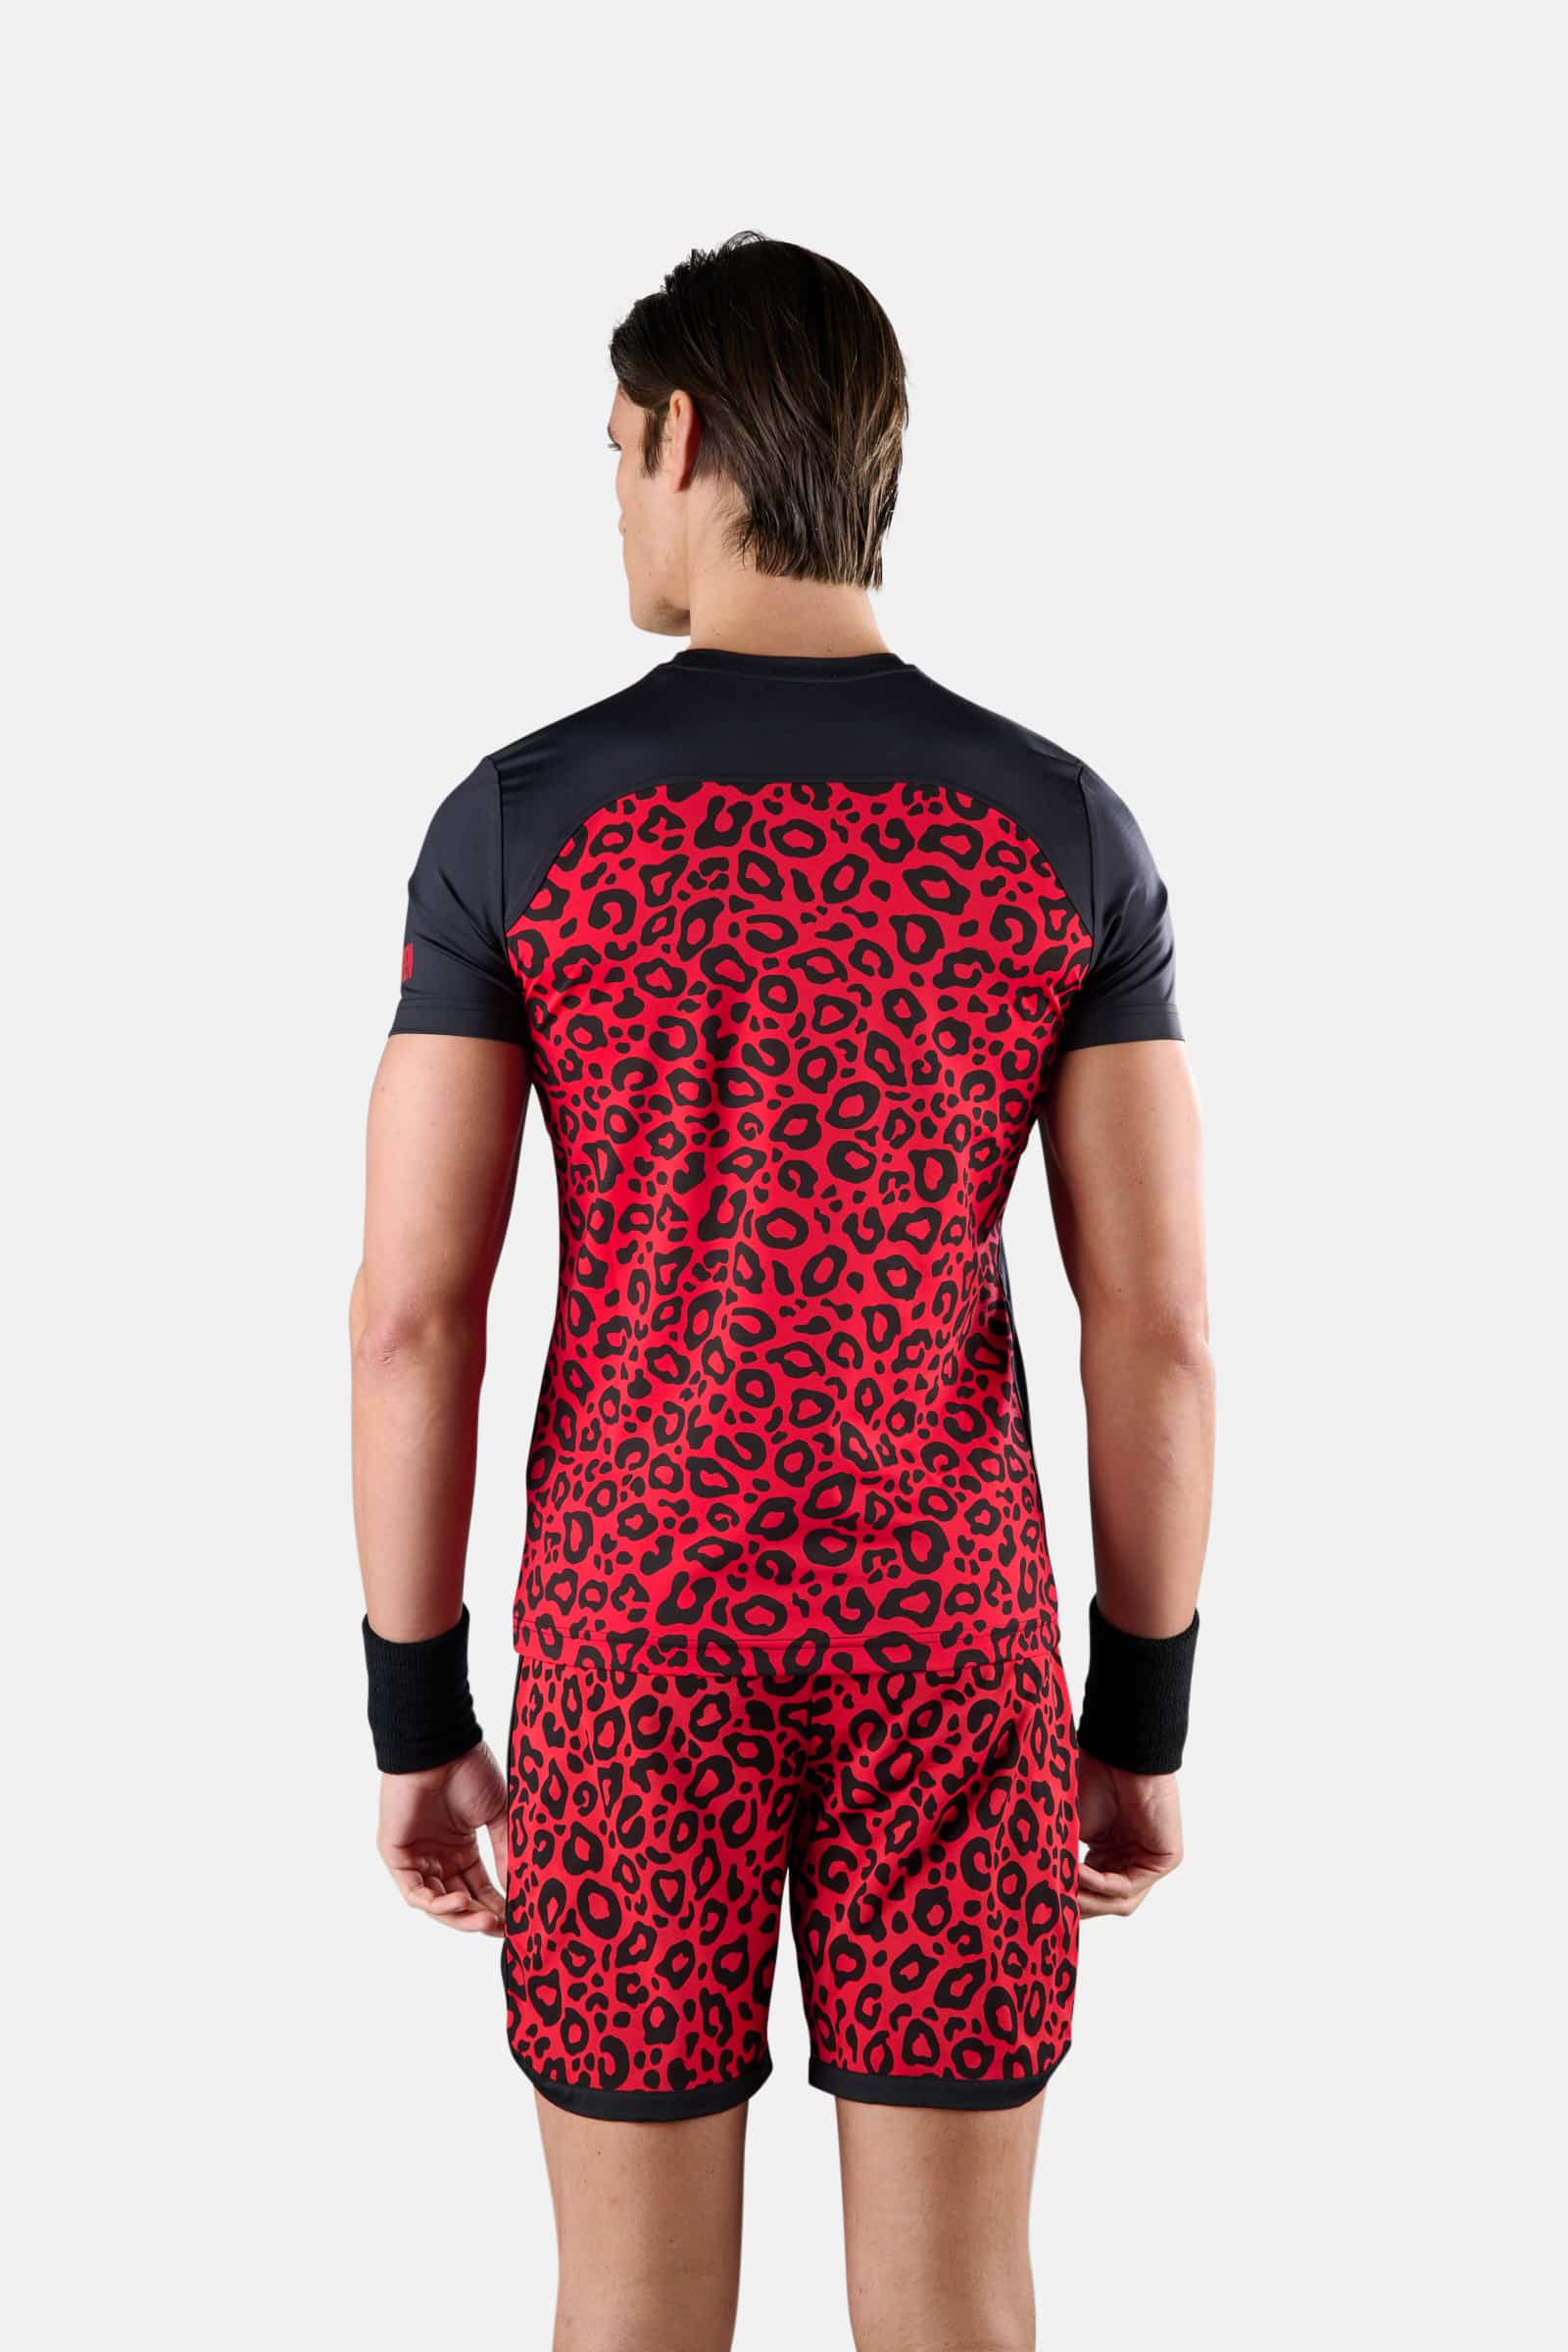 PANTHER TECH TEE - BLACK,RED - Hydrogen - Luxury Sportwear